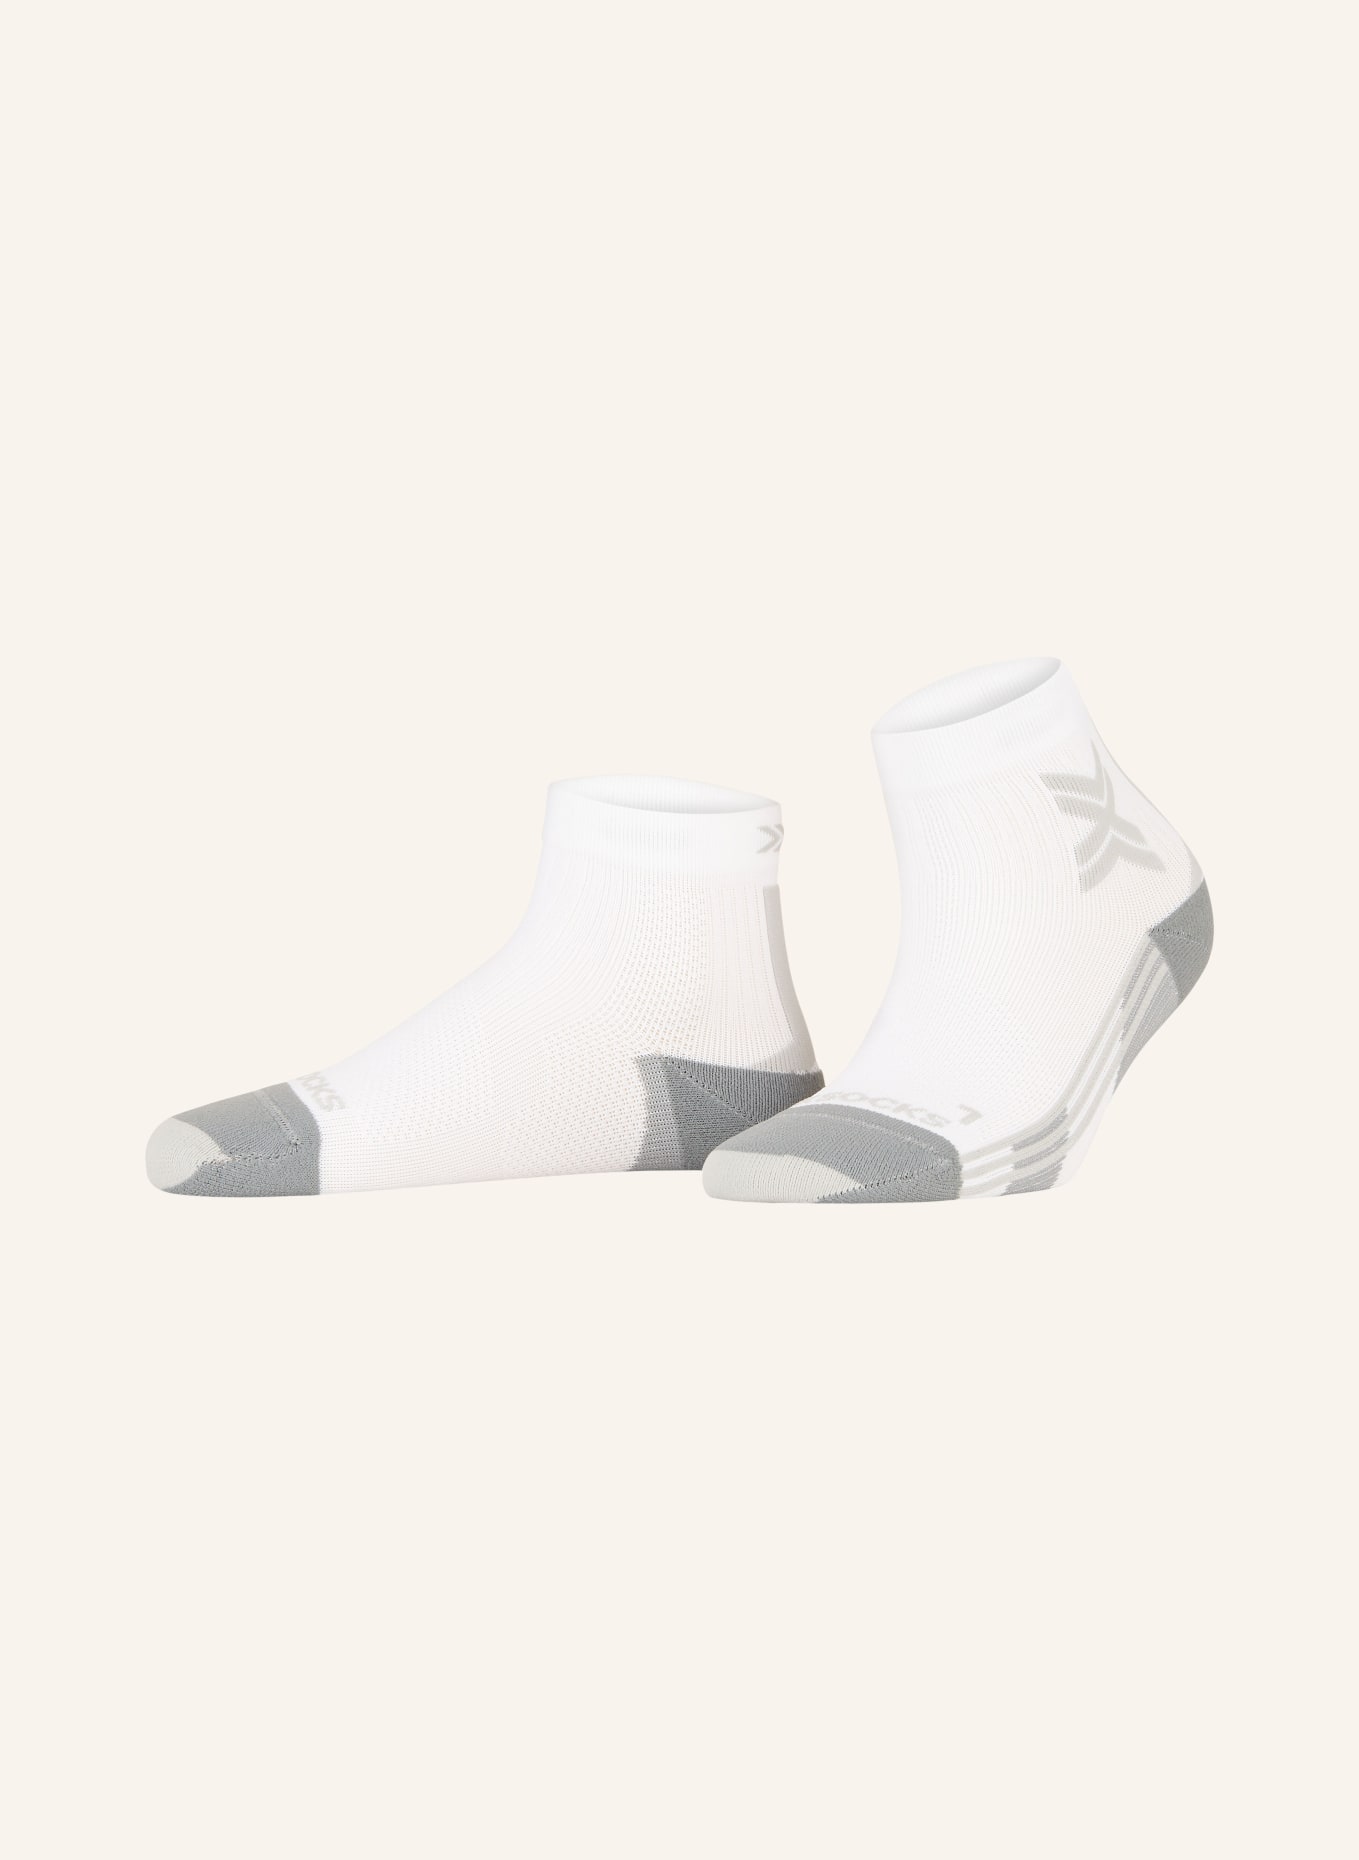 X-SOCKS Laufsocken RUN DISCOVER ANKLE, Farbe: W002 ARCTIC WHITE/PEARL GREY (Bild 1)